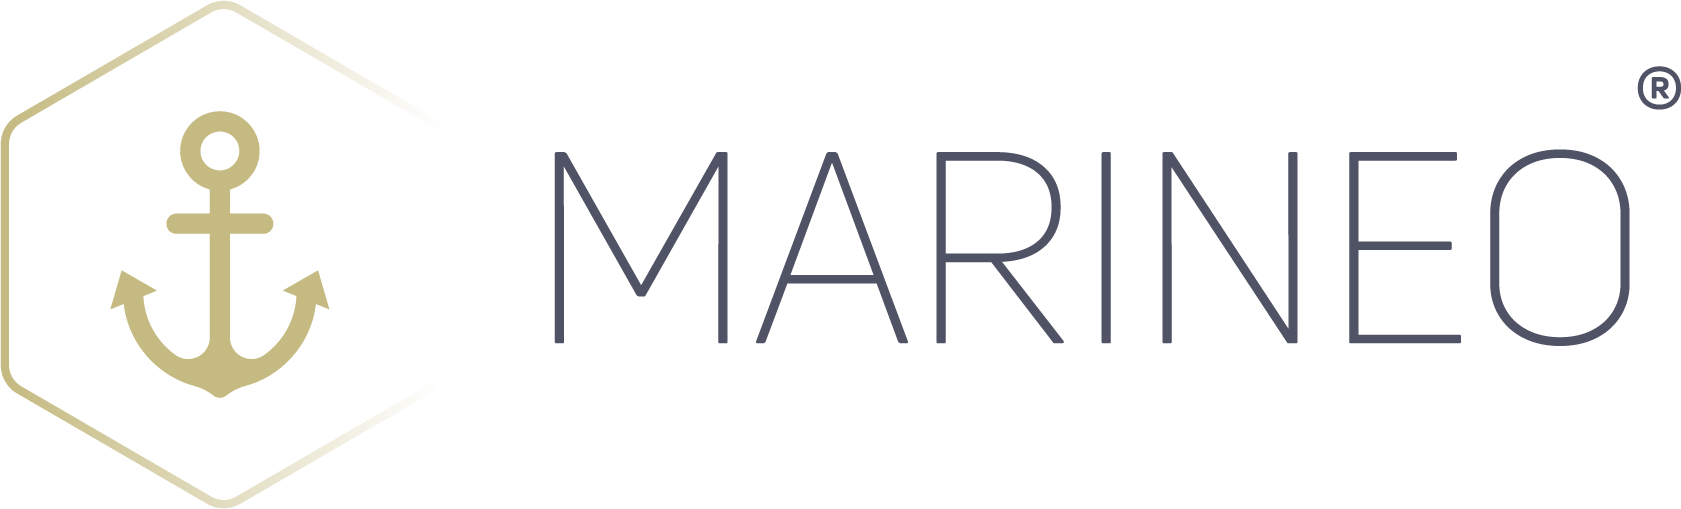 Marineo Logo